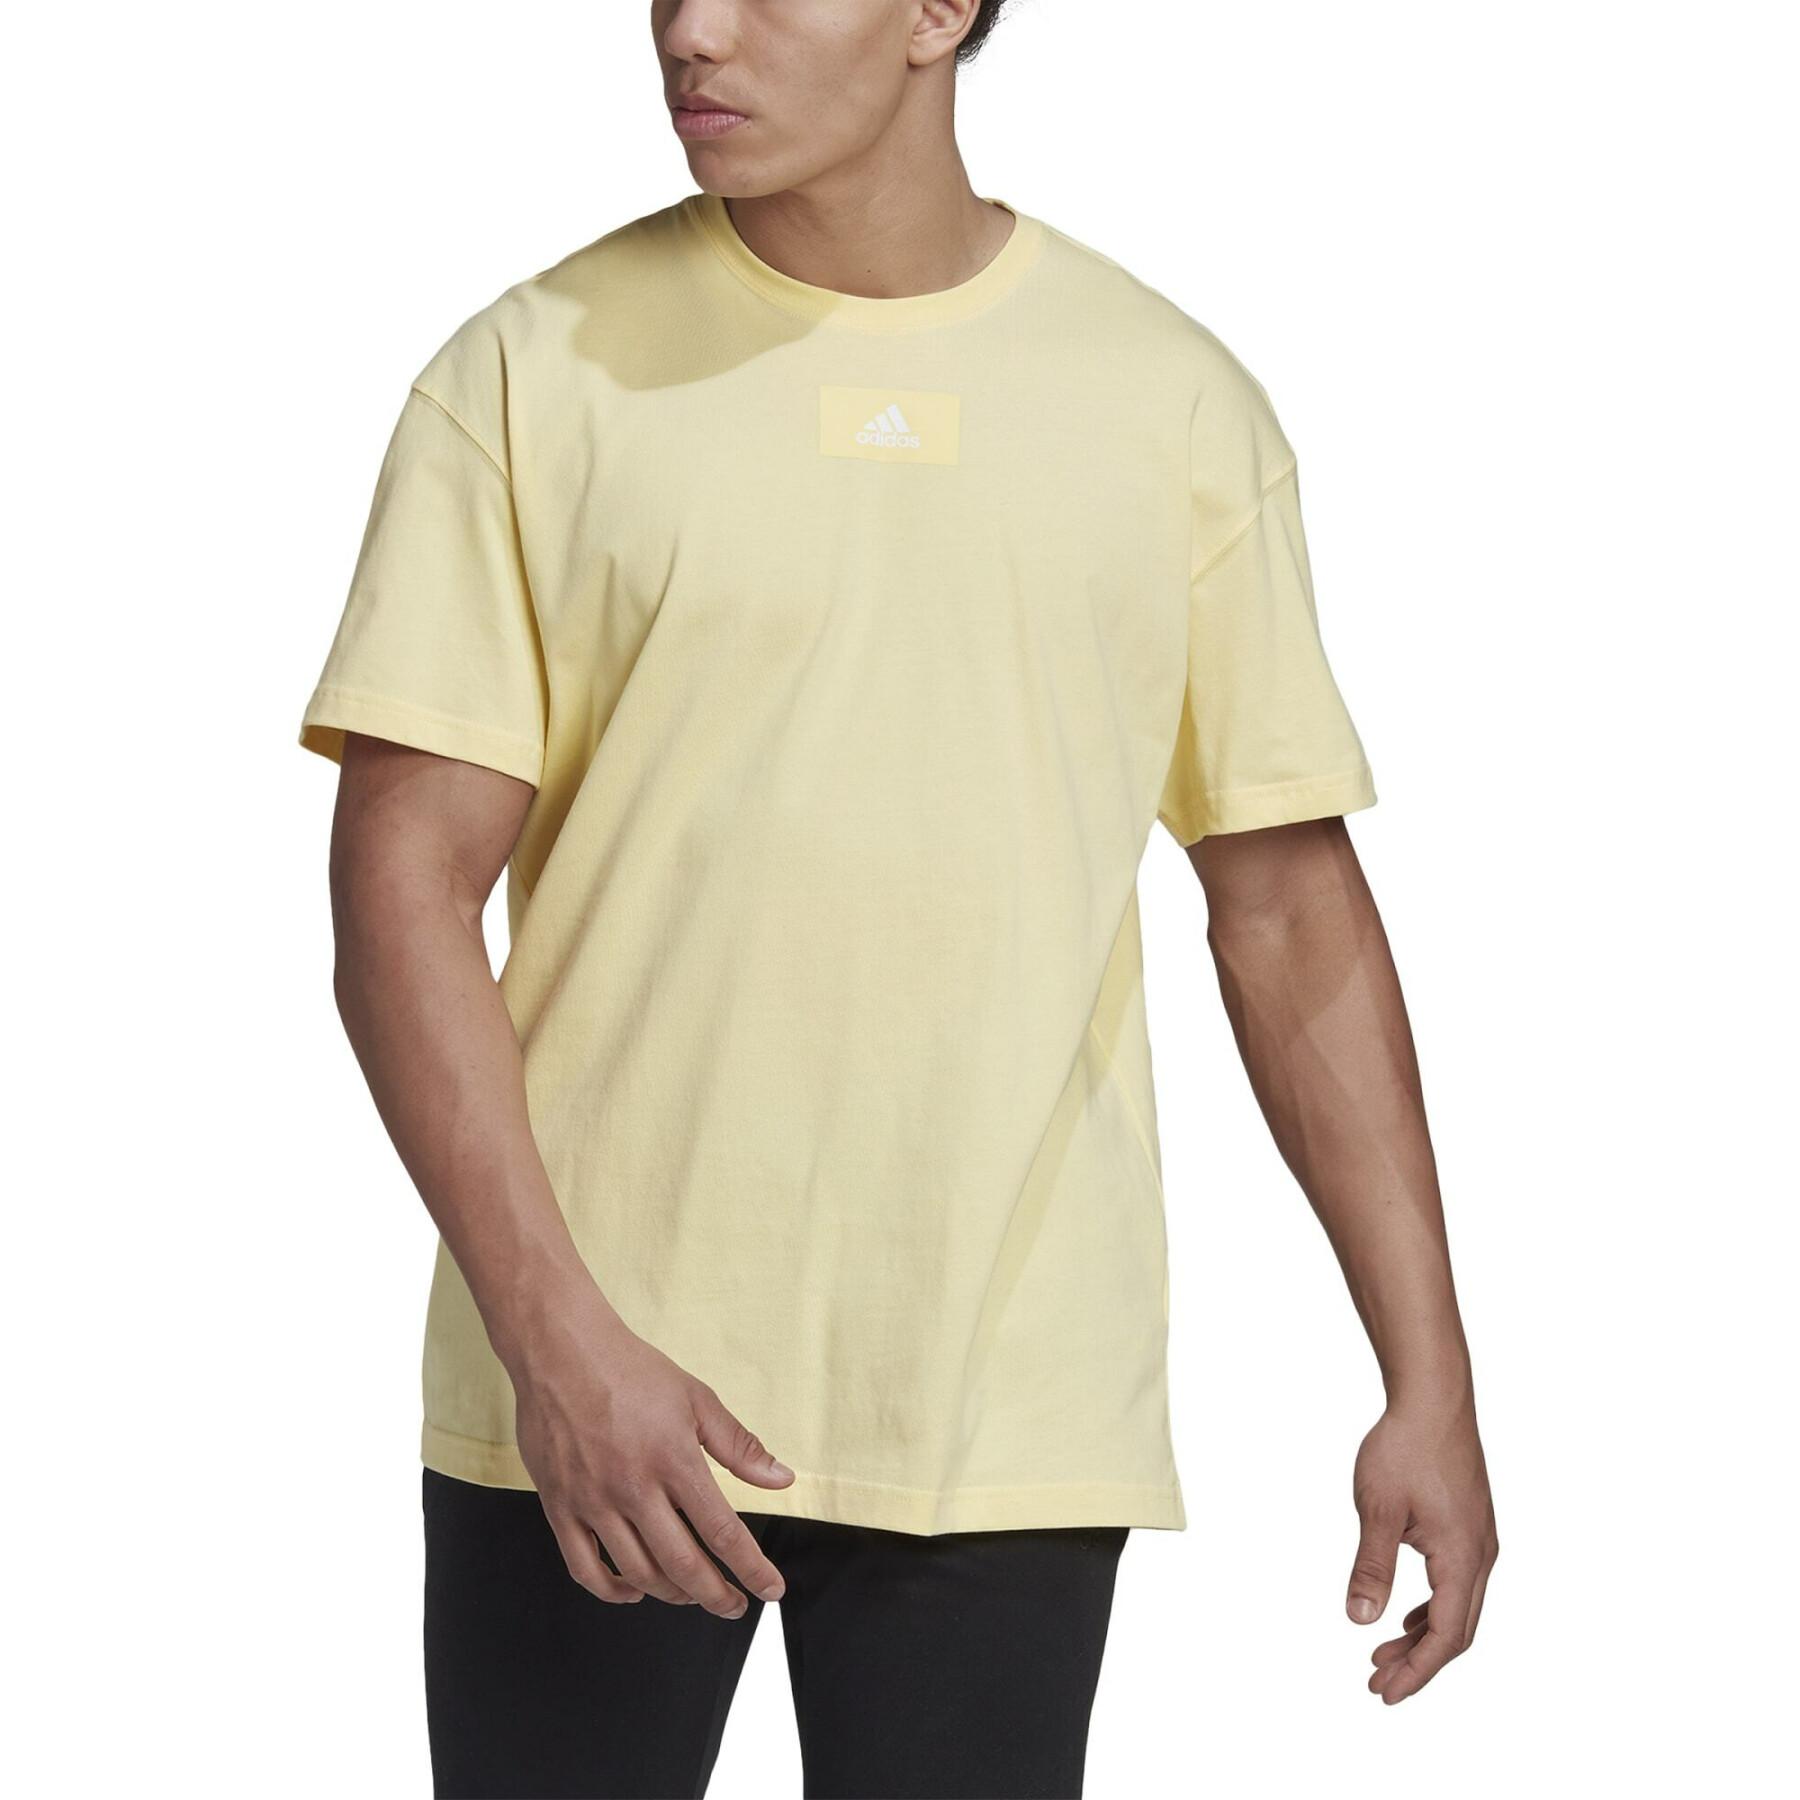 Drop-shoulder T-shirt adidas Essentials FeelVivid